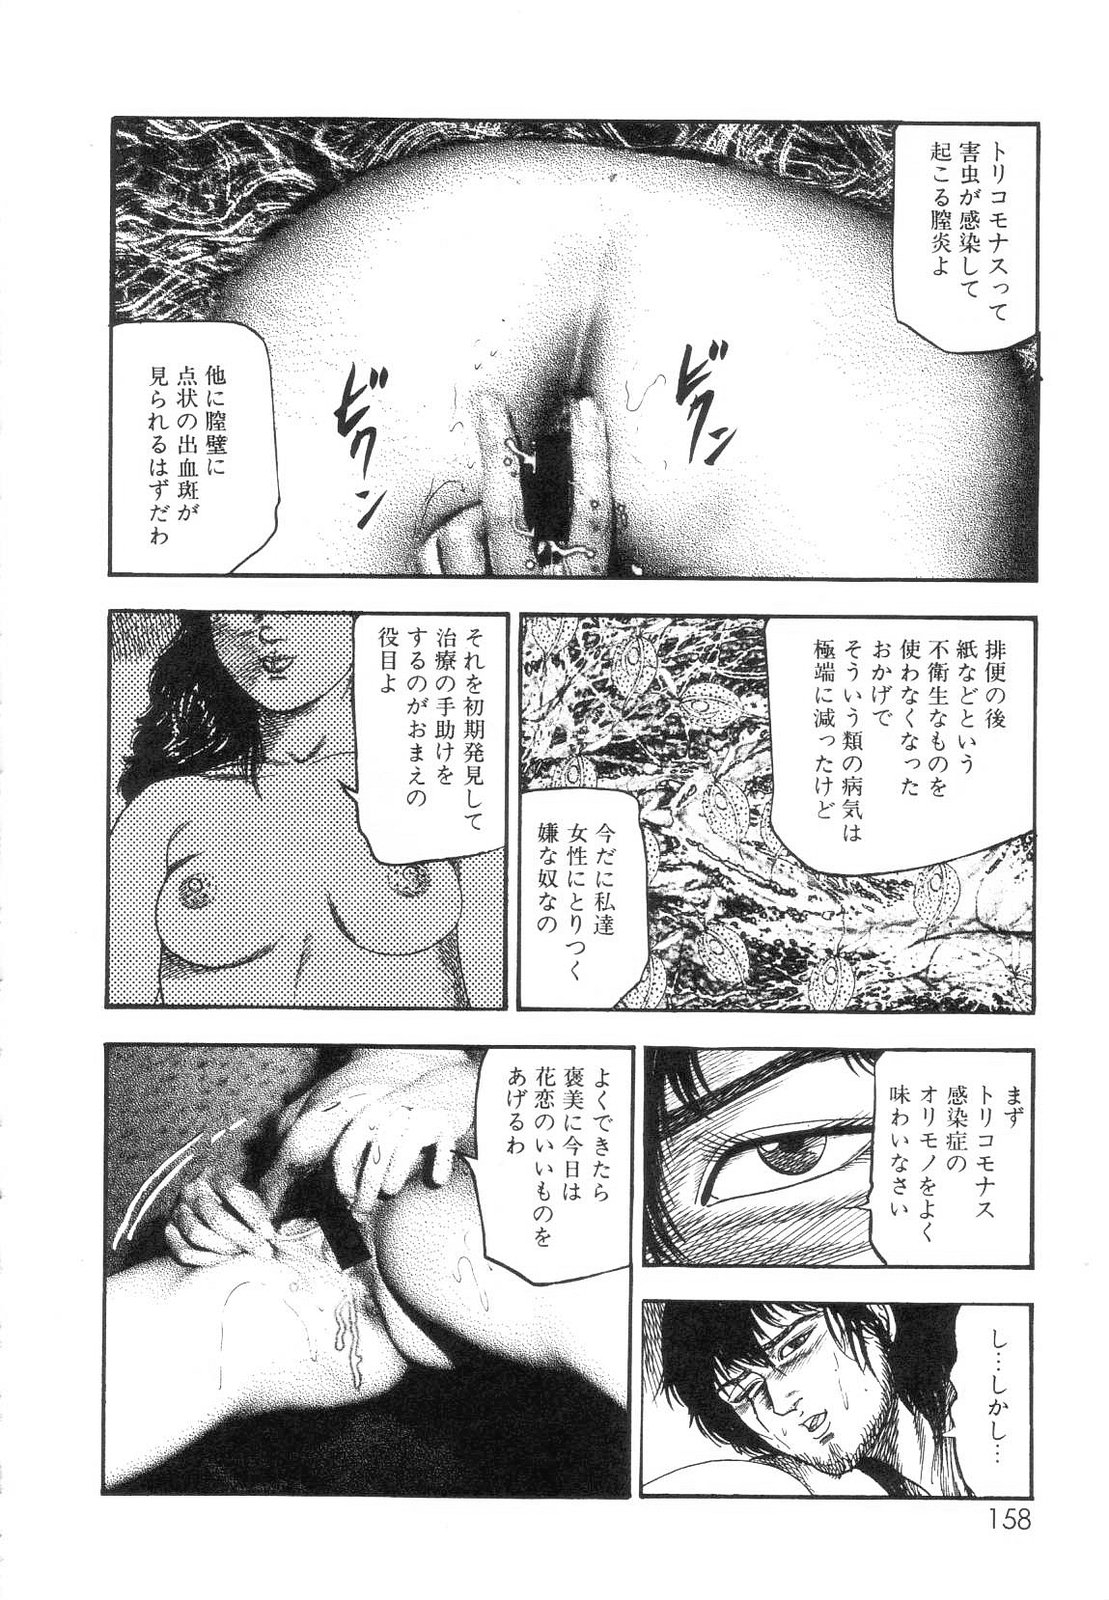 [Sanjou Tomomi] Shiro no Mokushiroku Vol. 7 - Shiiku Ningyou Erika no Shou 159